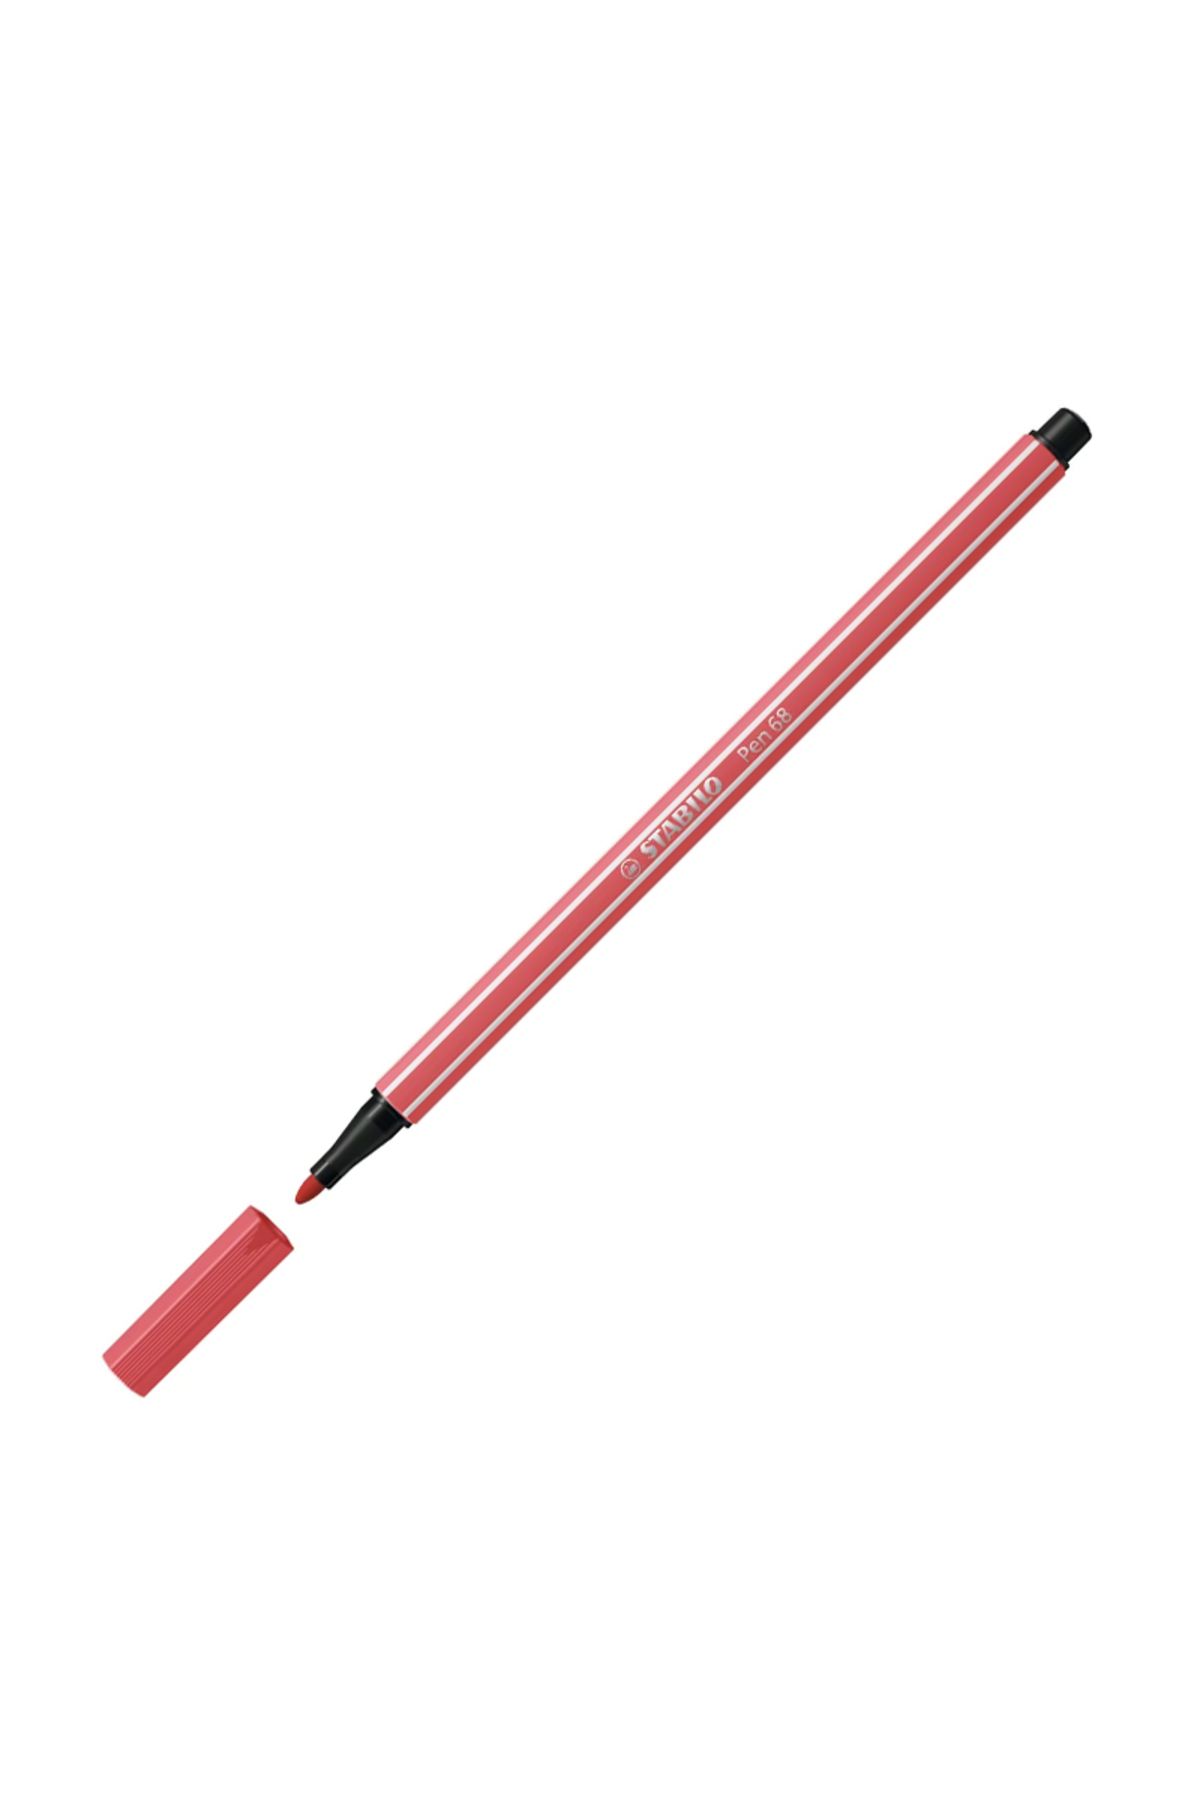 Stabilo Pen 68 Keçe Uçlu Kalem Pas Kırmızısı 1mm 68/47